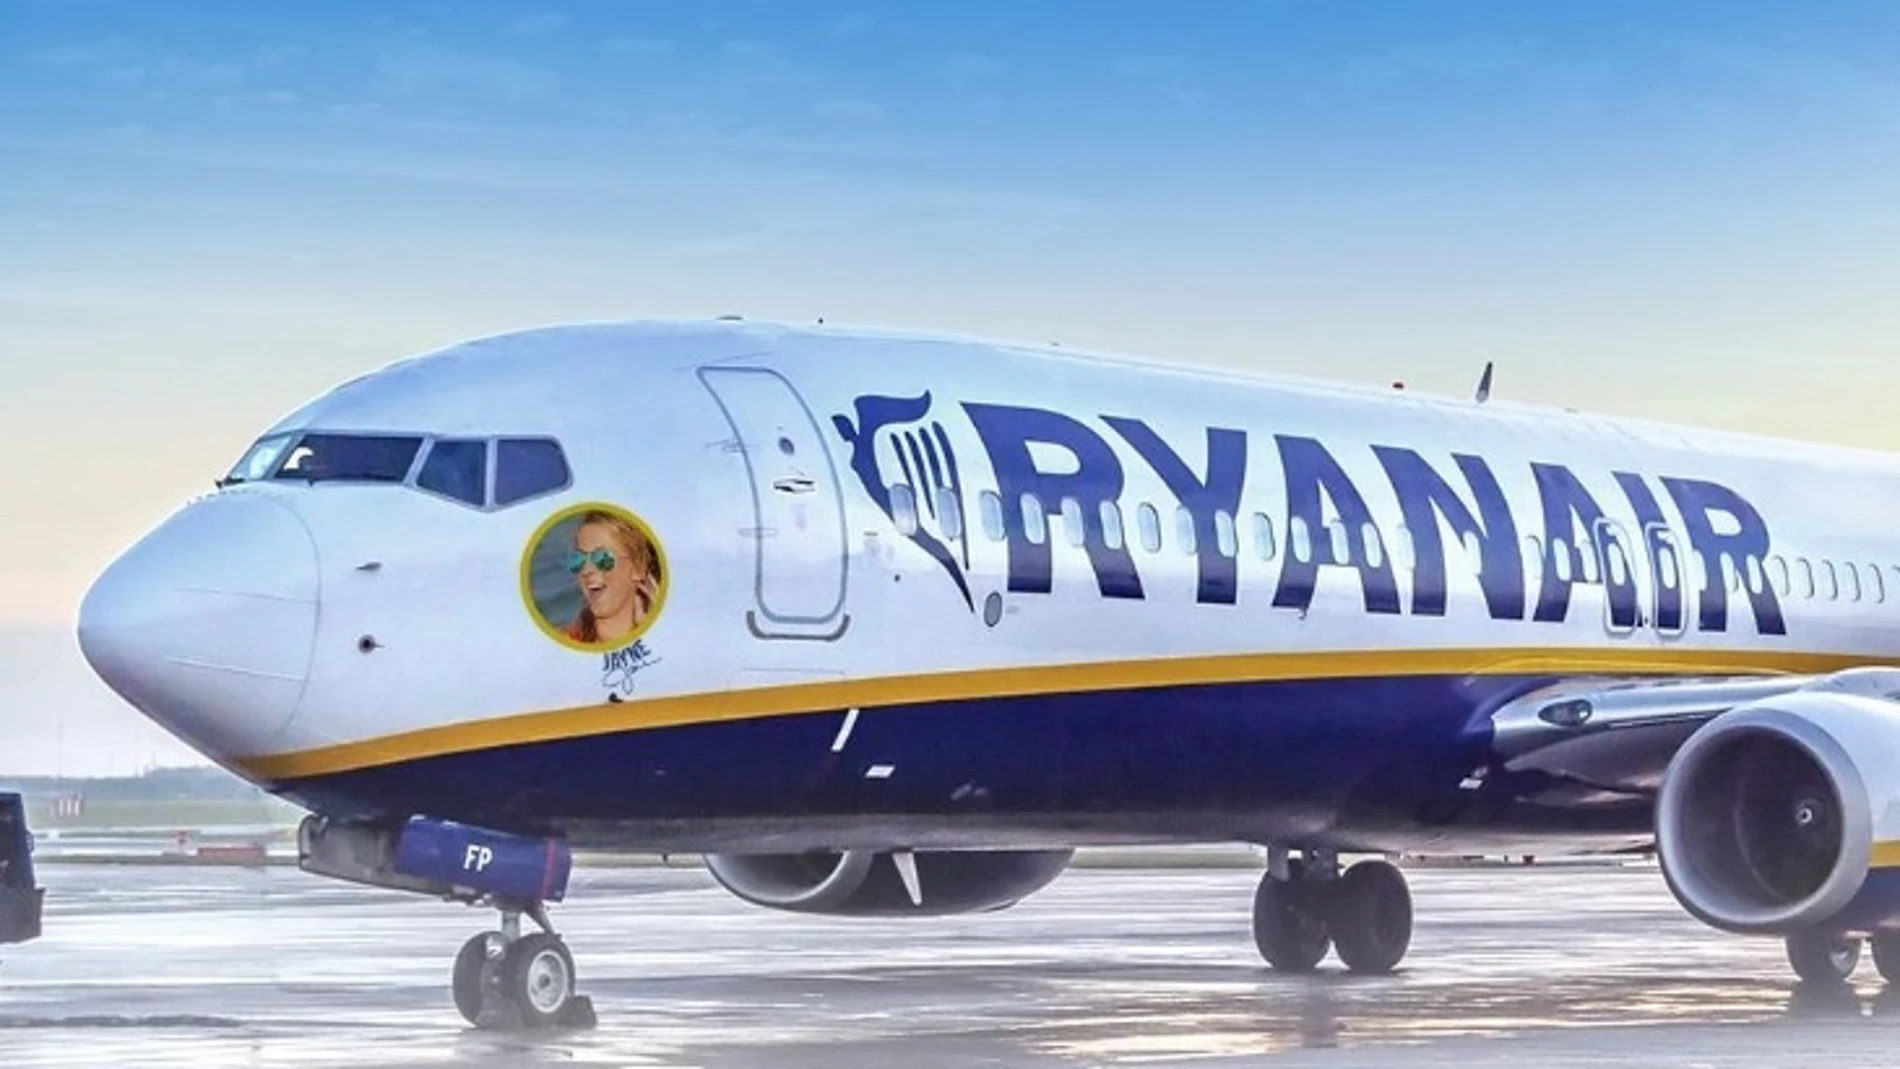 Economía.- Condenan a Ryanair a readmitir y pagar 115.000 euros a un empleado despedido durante la huelga de 2019